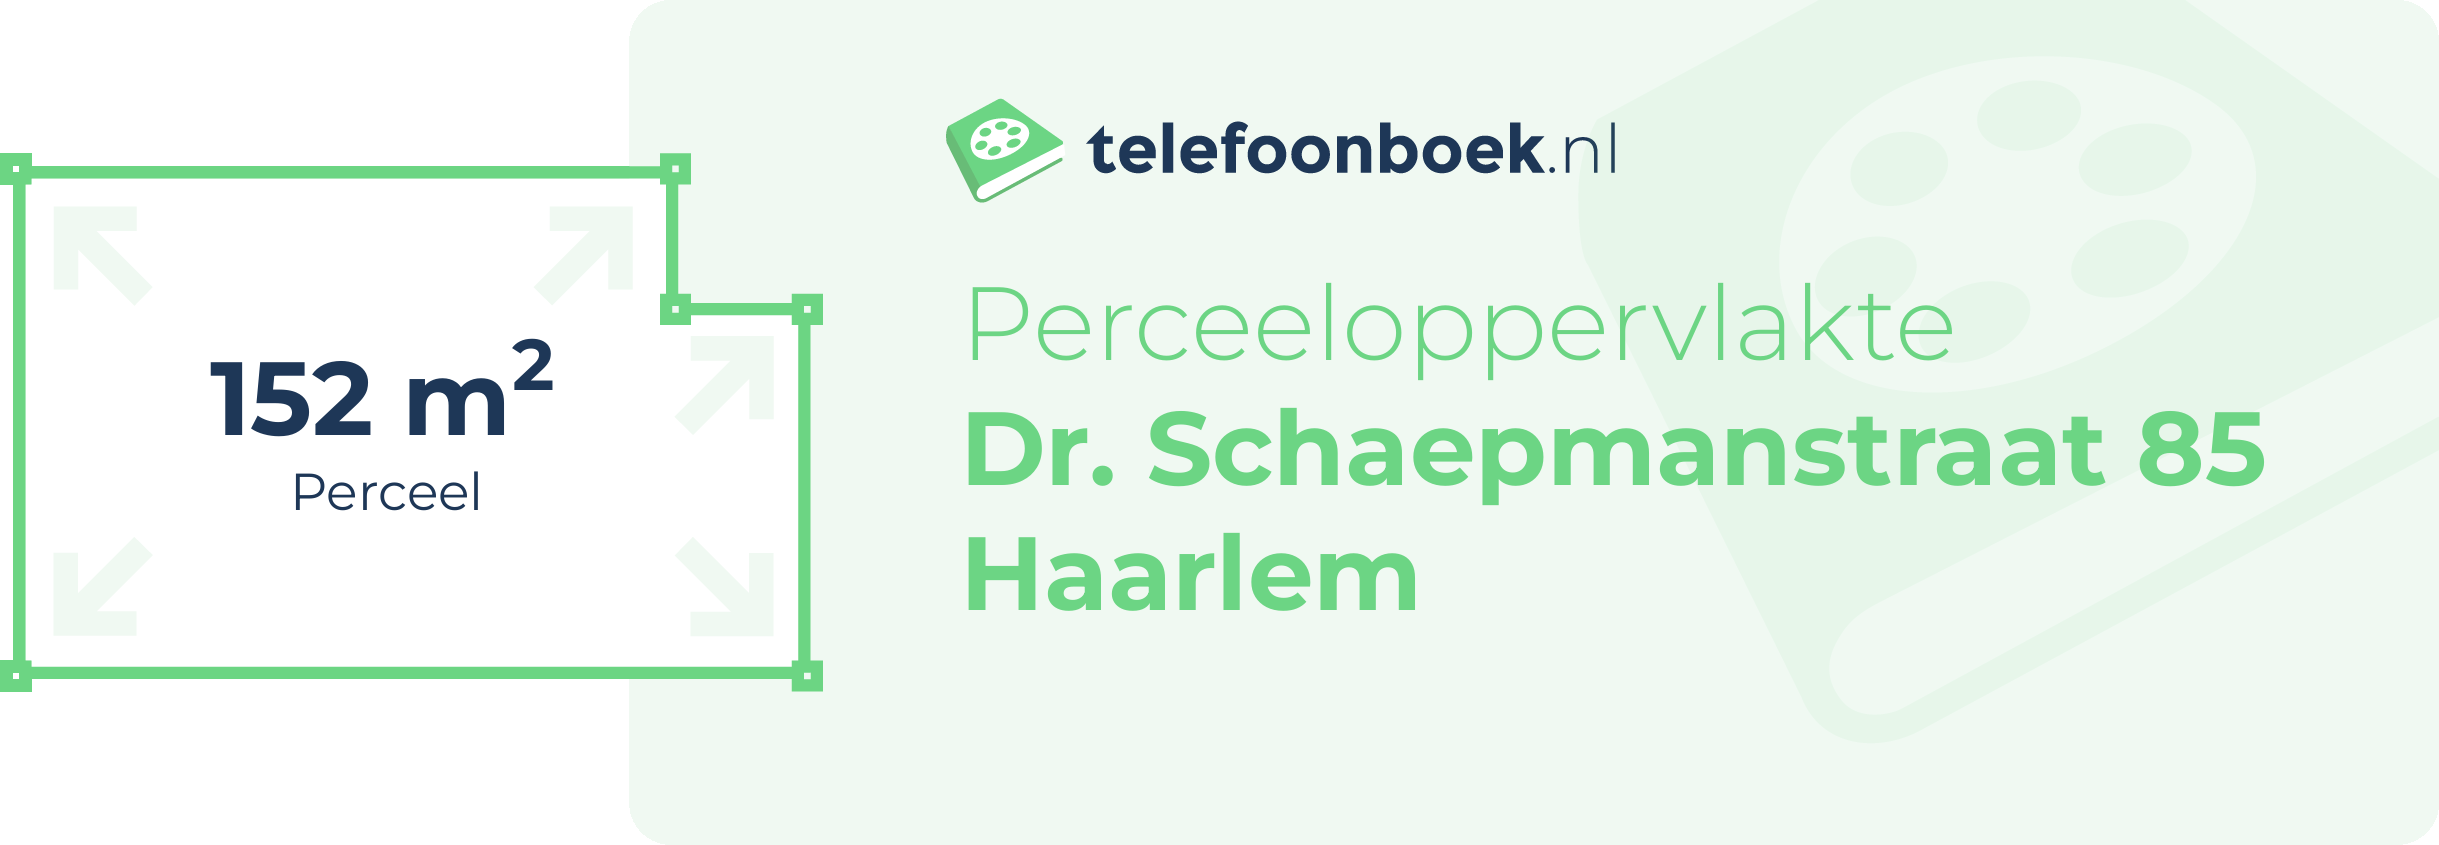 Perceeloppervlakte Dr. Schaepmanstraat 85 Haarlem